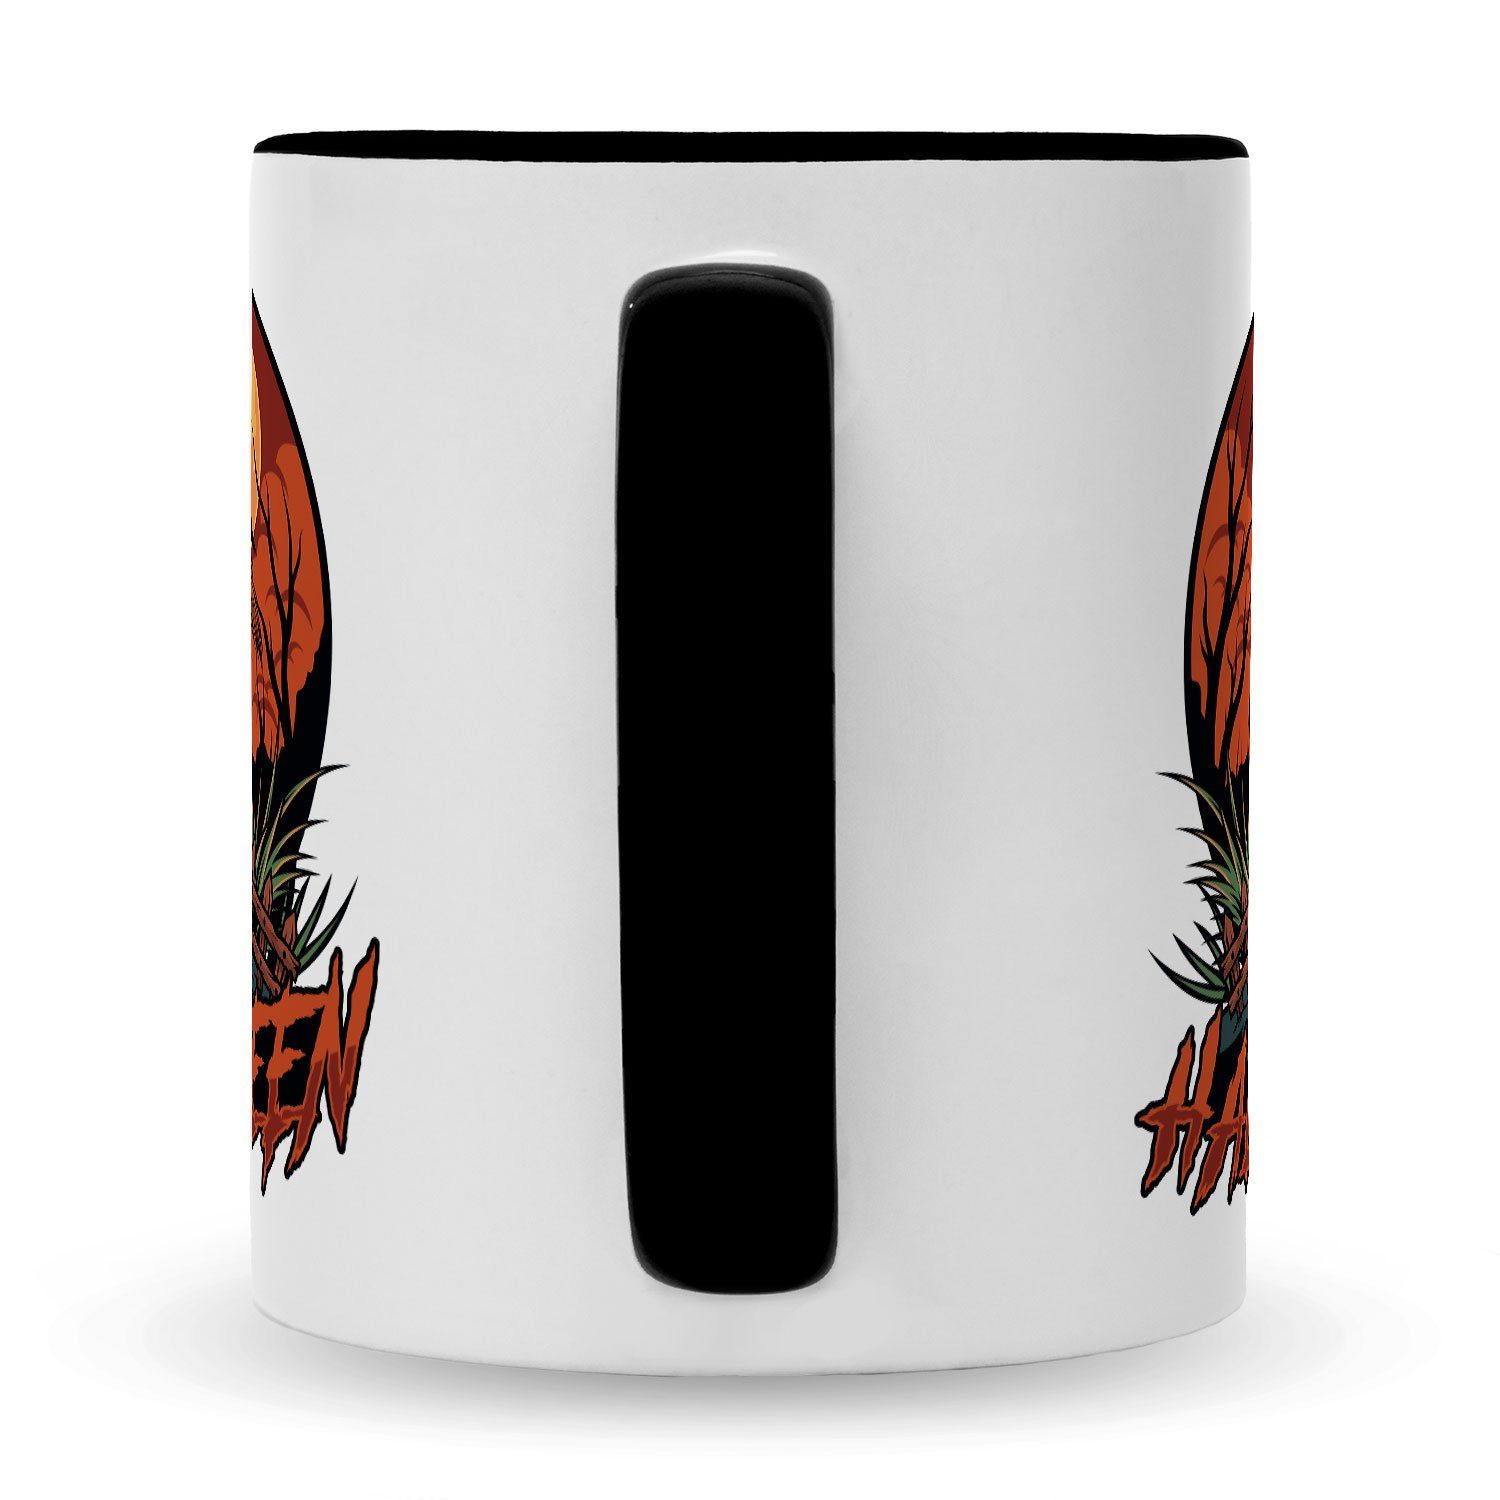 GRAVURZEILE Design - Halloween Tasse Motiv Schwarz mit zu Schaurige Weiß Vogelscheuchen - Geschenke